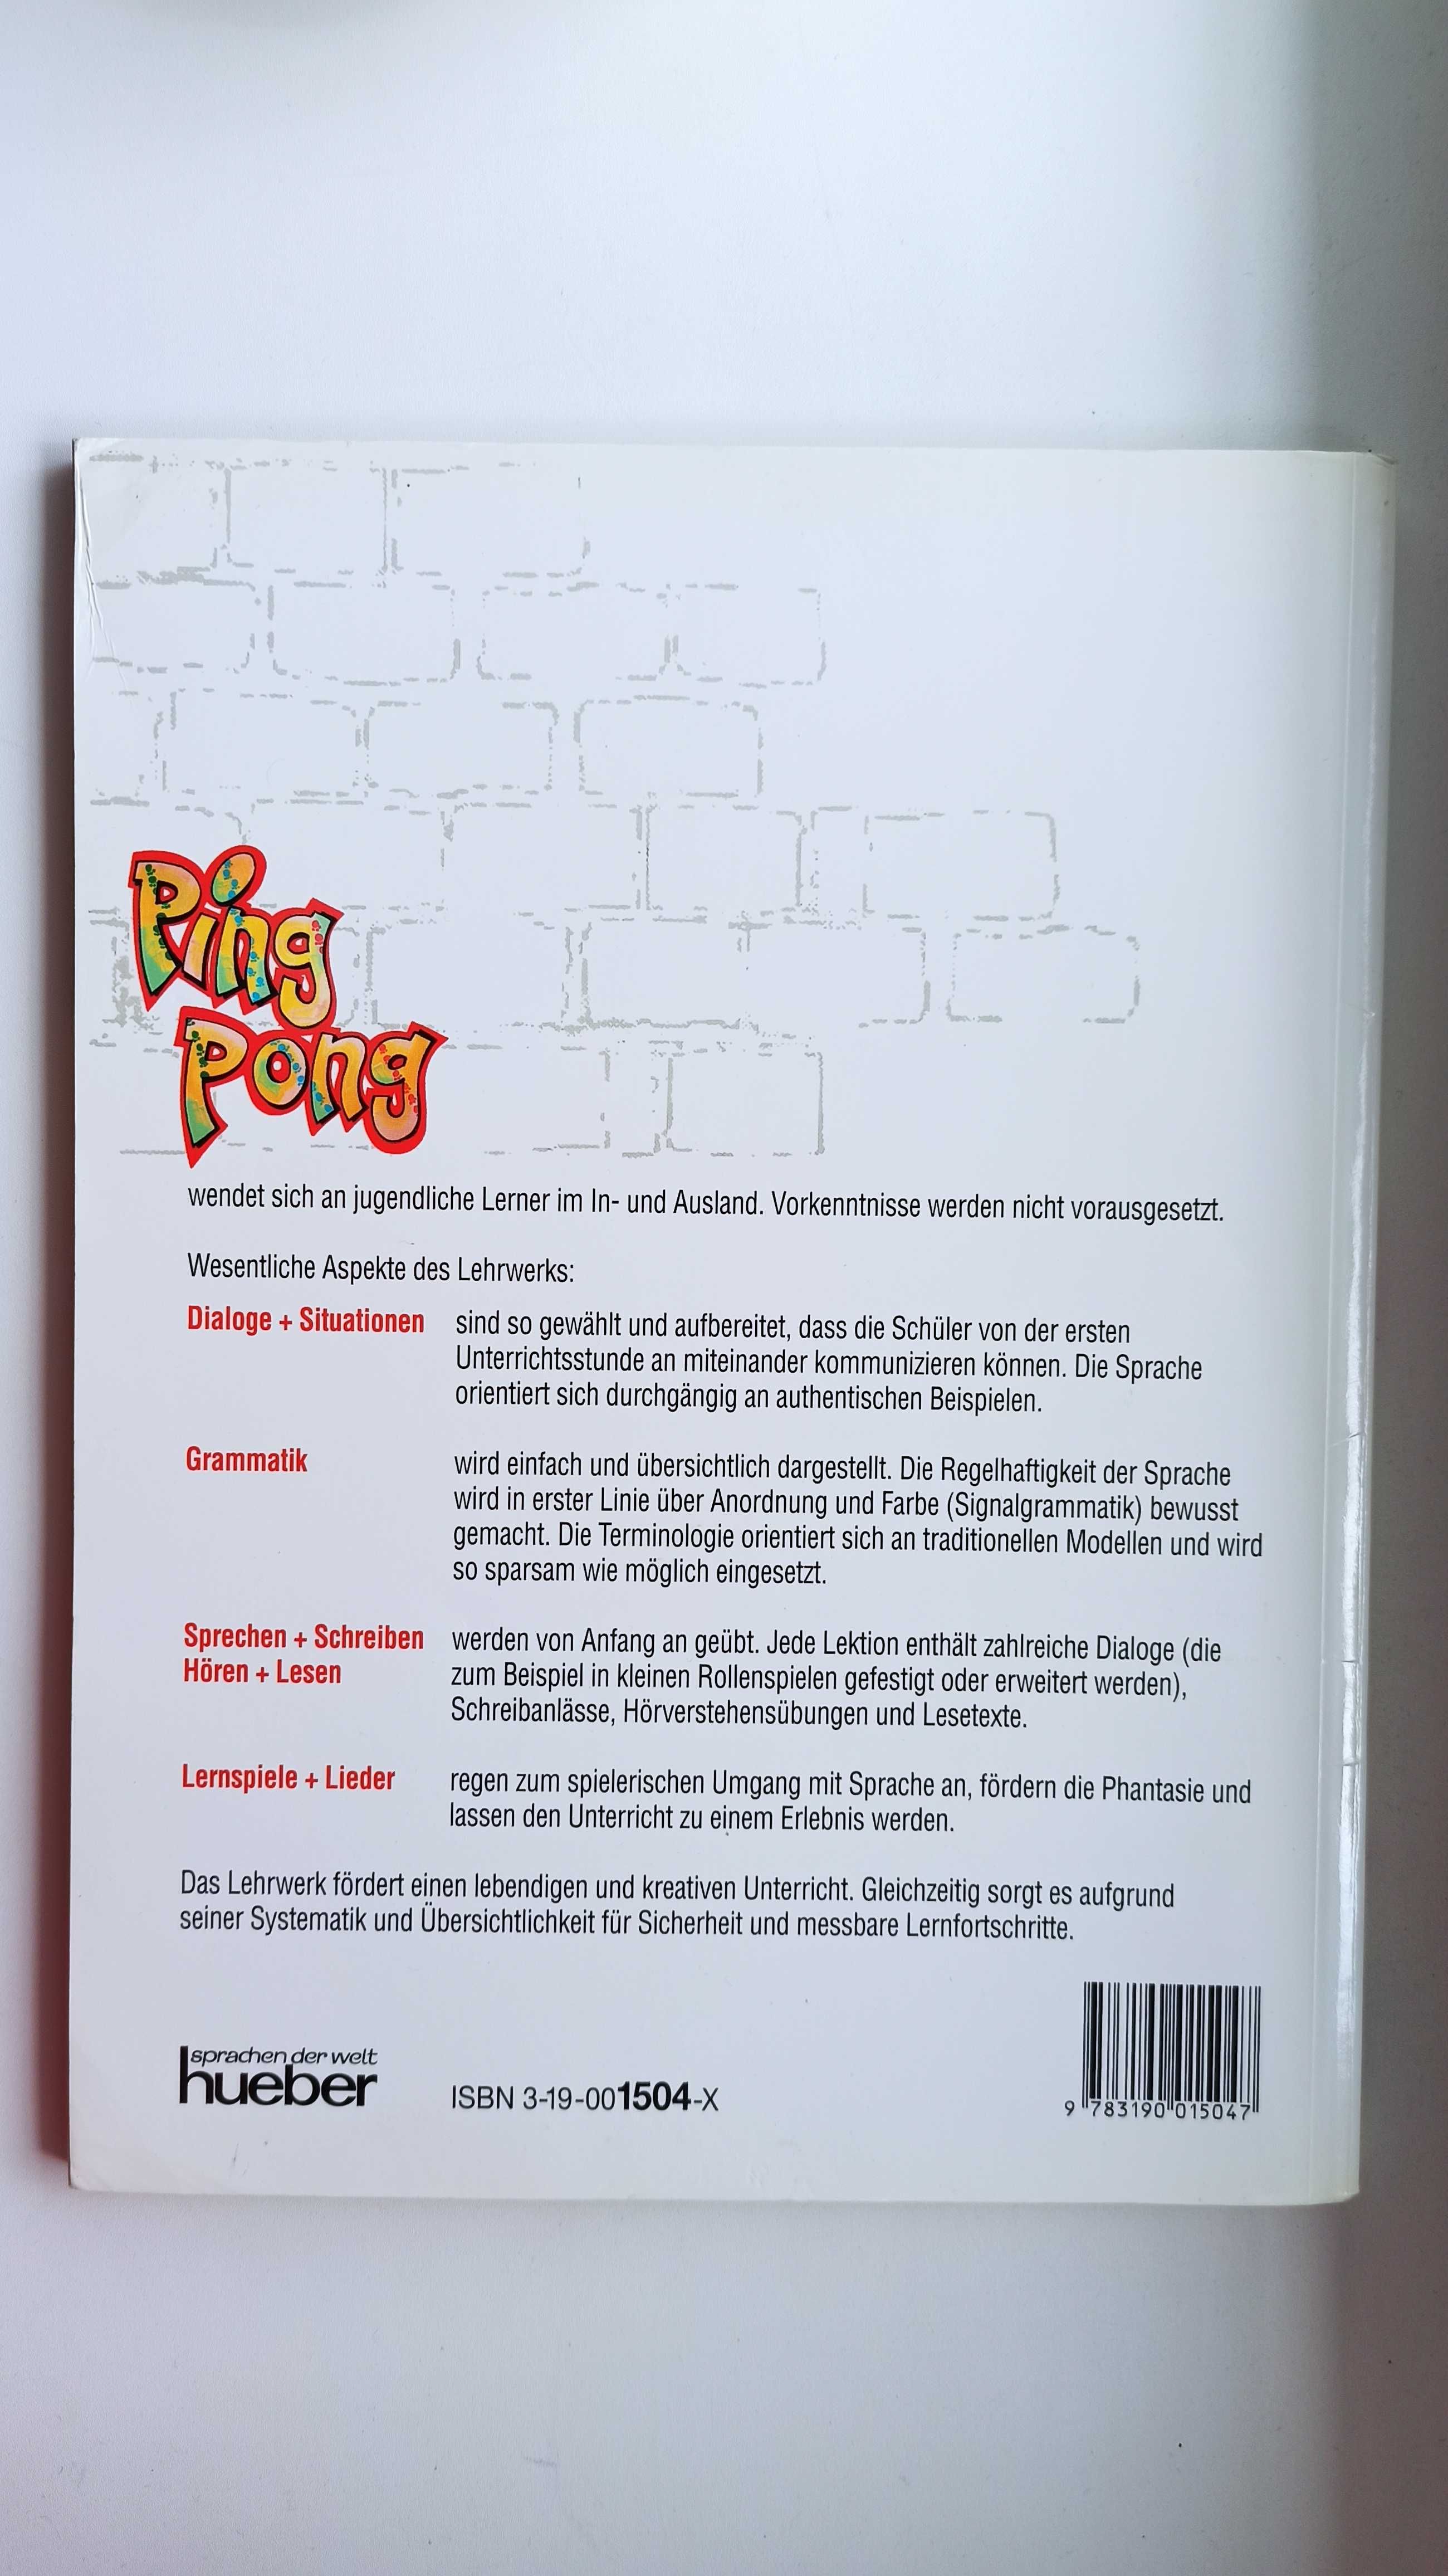 Підручник з німецької мови для початківців Ping Pong 1